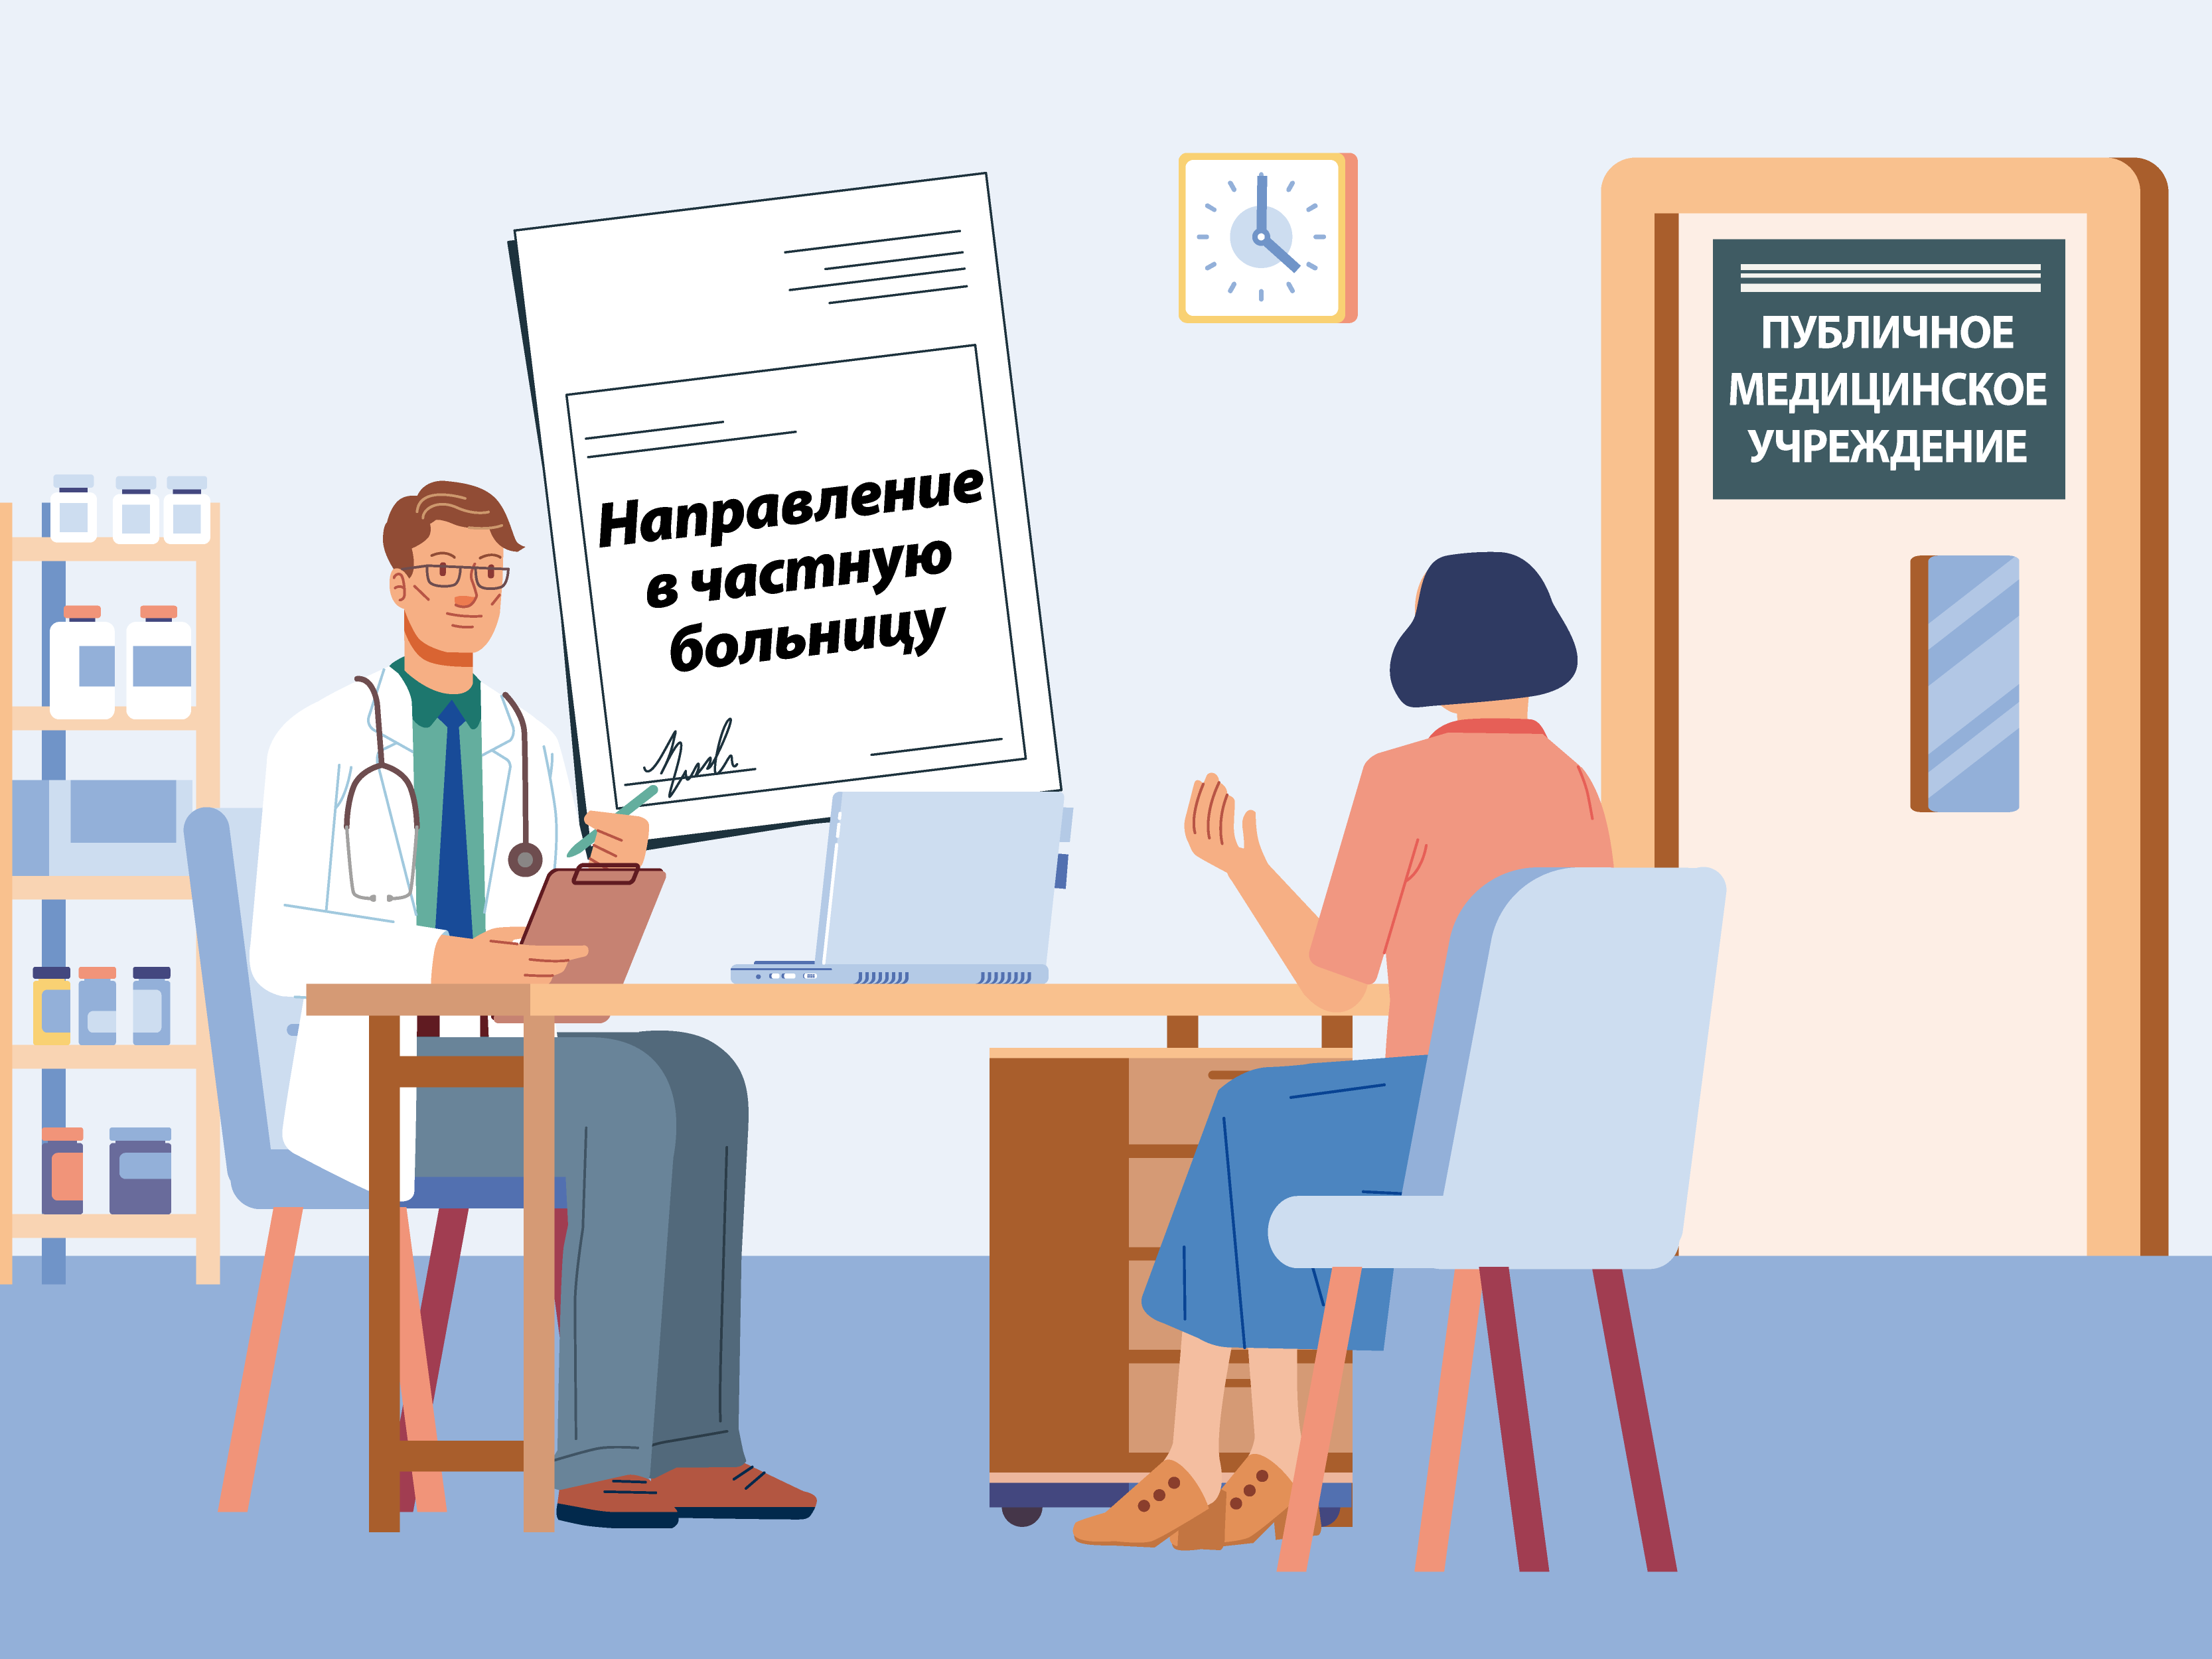 С фото — частные врачи в Москве, частные врачи рядом со мной на карте — Яндекс Карты